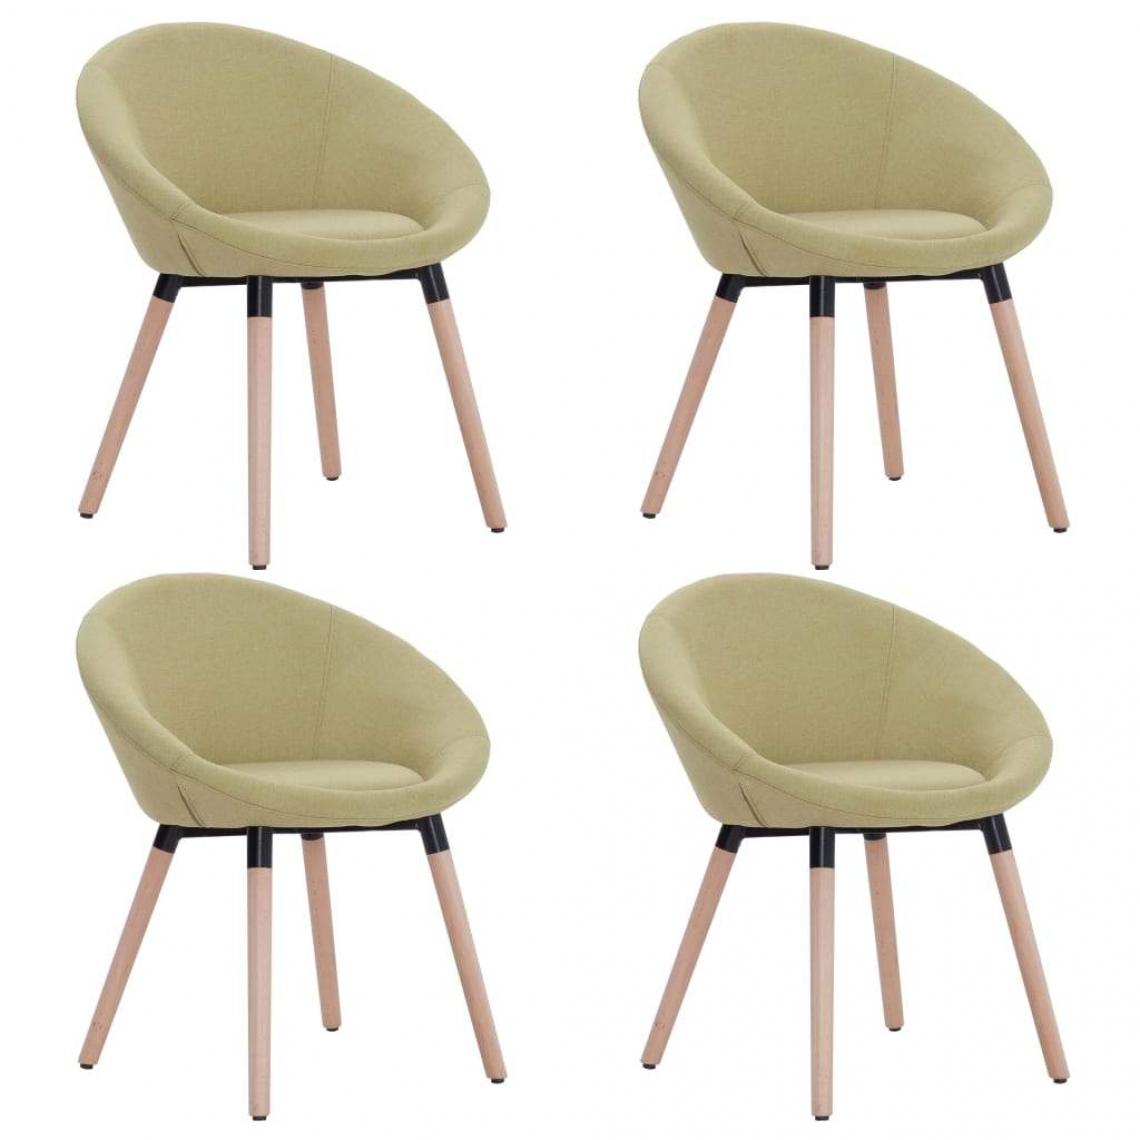 Decoshop26 - Lot de 4 chaises de salle à manger cuisine design contemporain tissu vert CDS022039 - Chaises